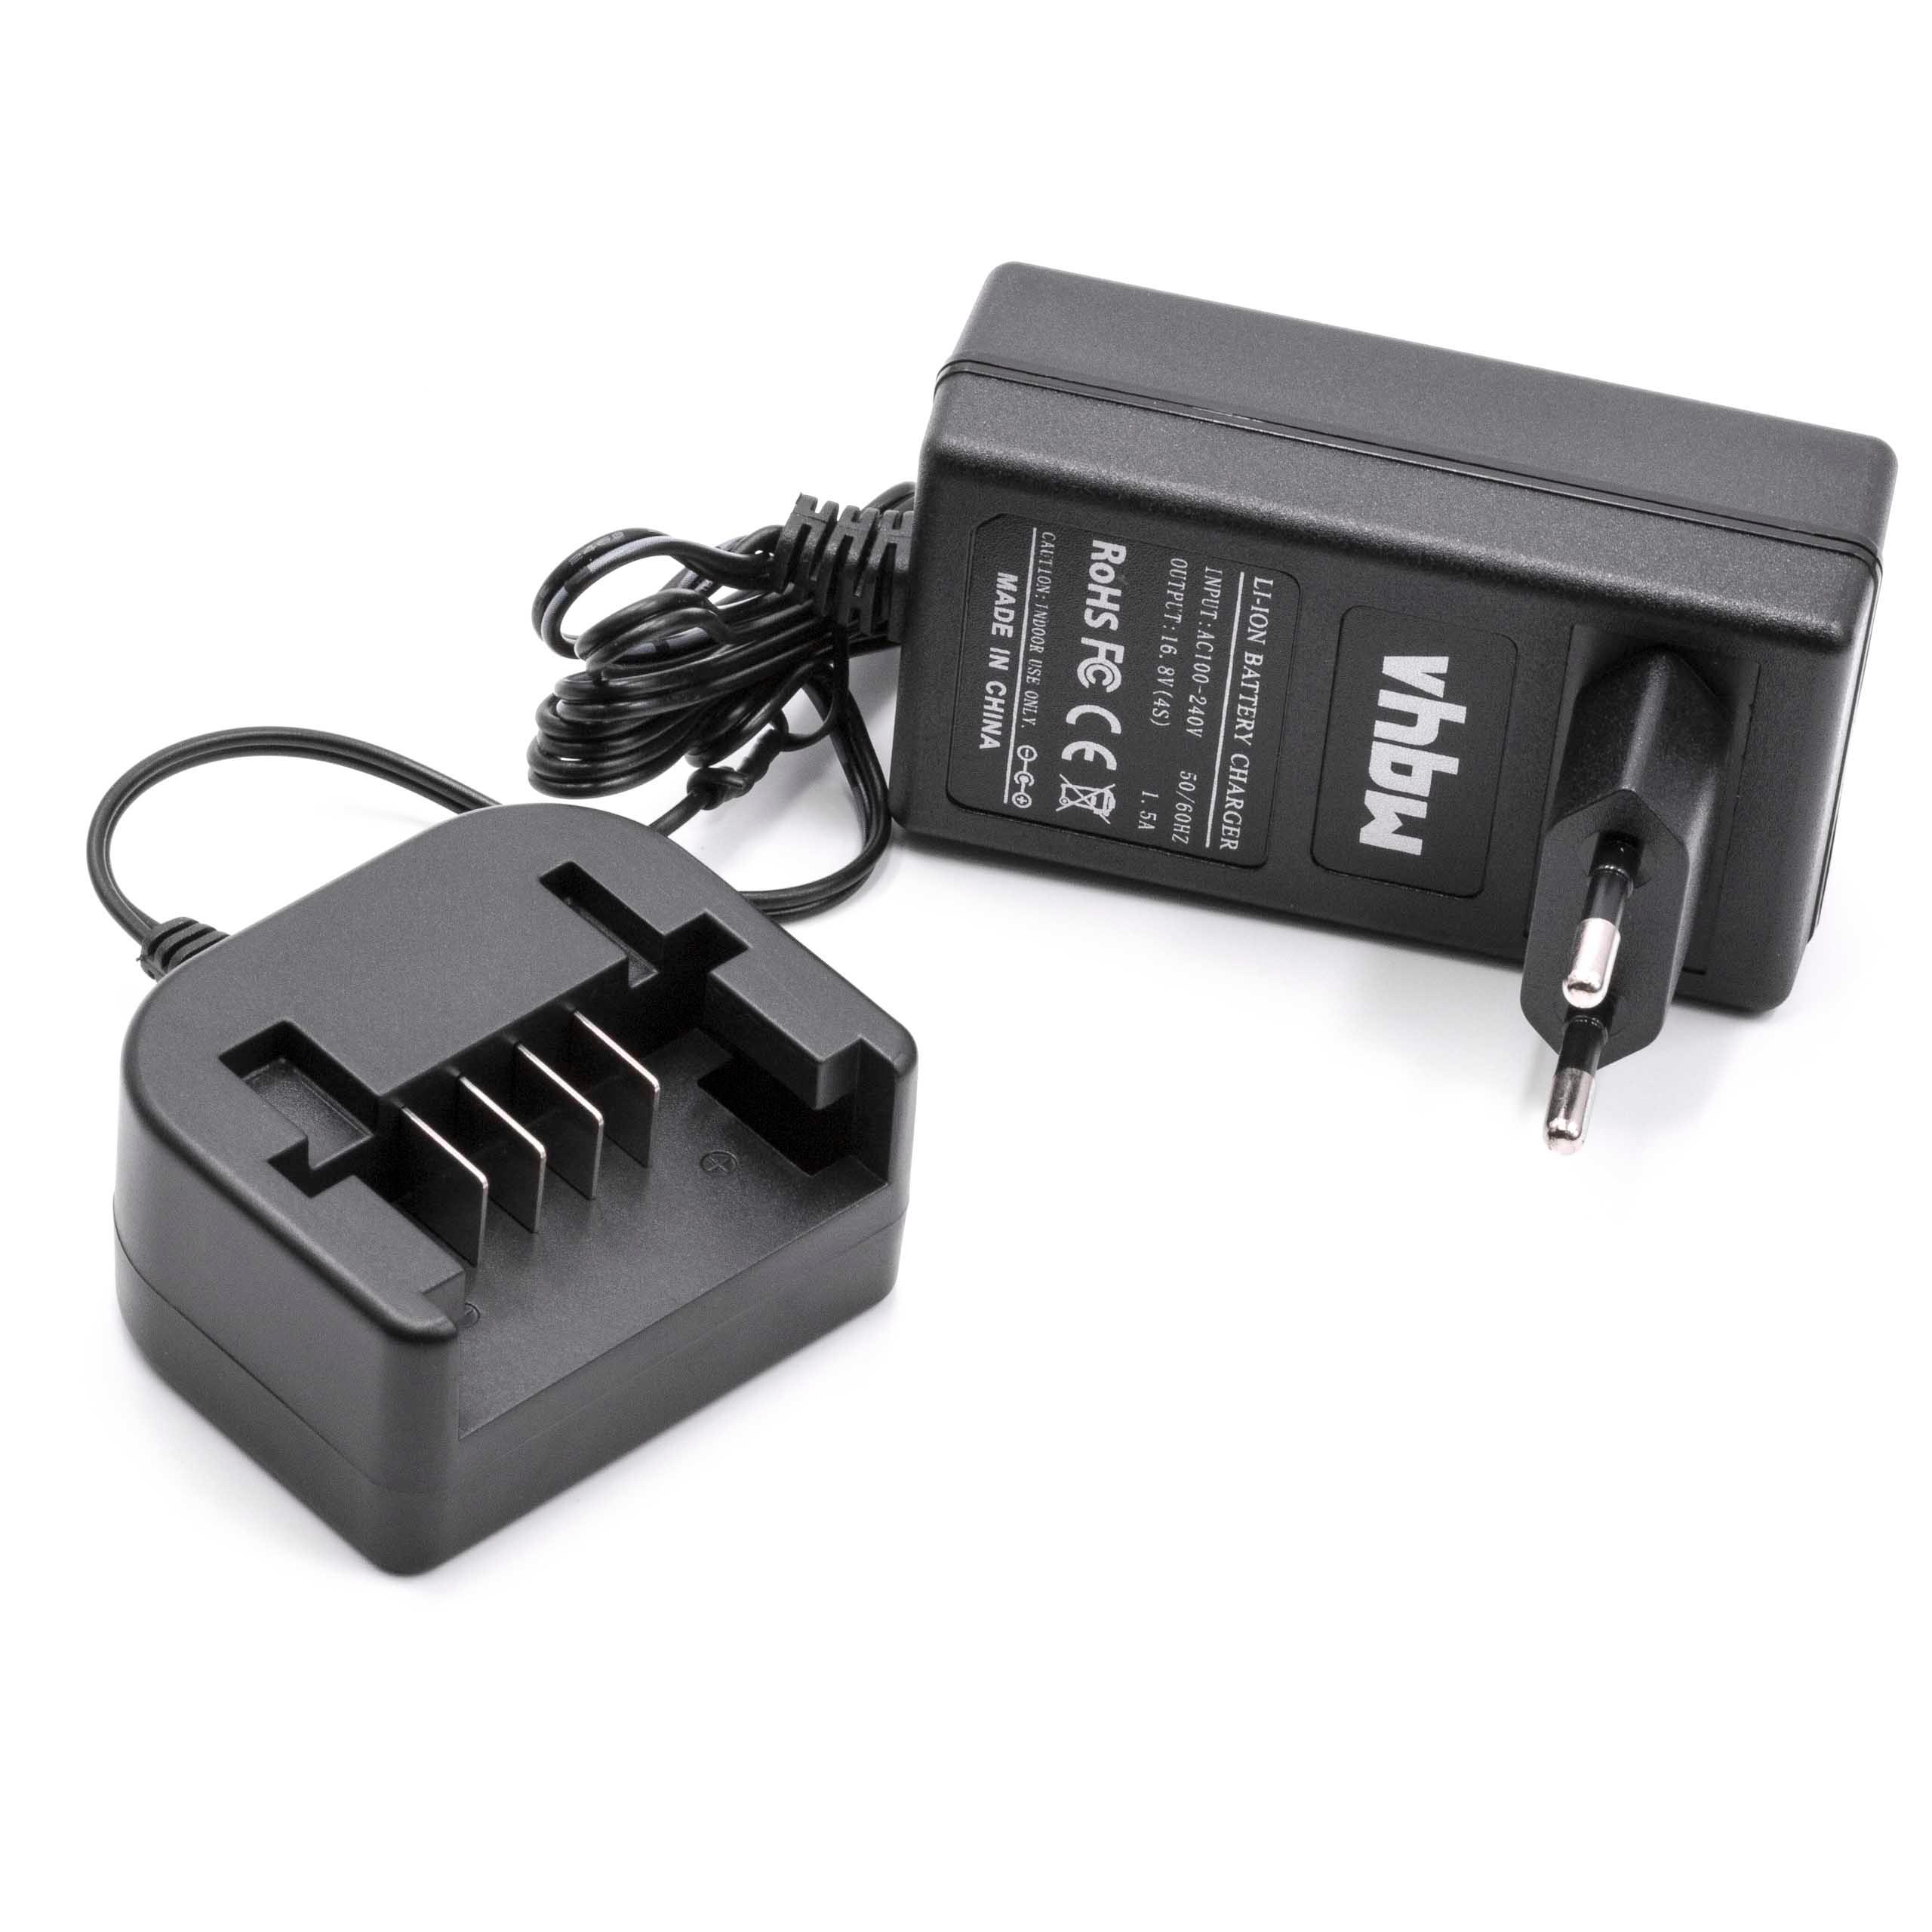 Caricabatterie per batterie utensile Black & Decker, ASL146 - 14,4 V / 1,5 A